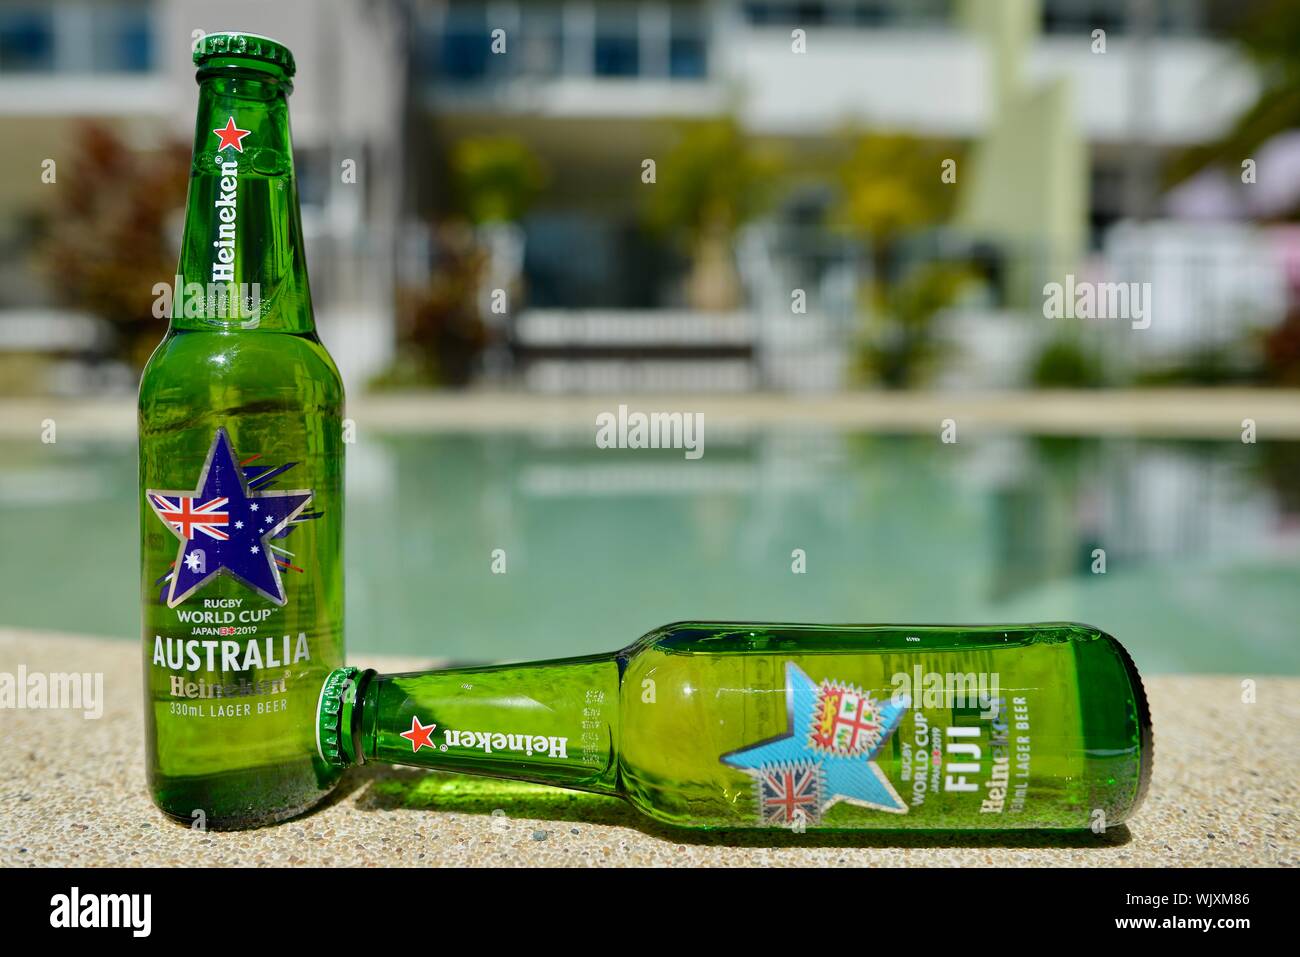 Australia versus Fiji, Australia wins, Heineken 2019 Japan Rugby world cup beer bottles Stock Photo